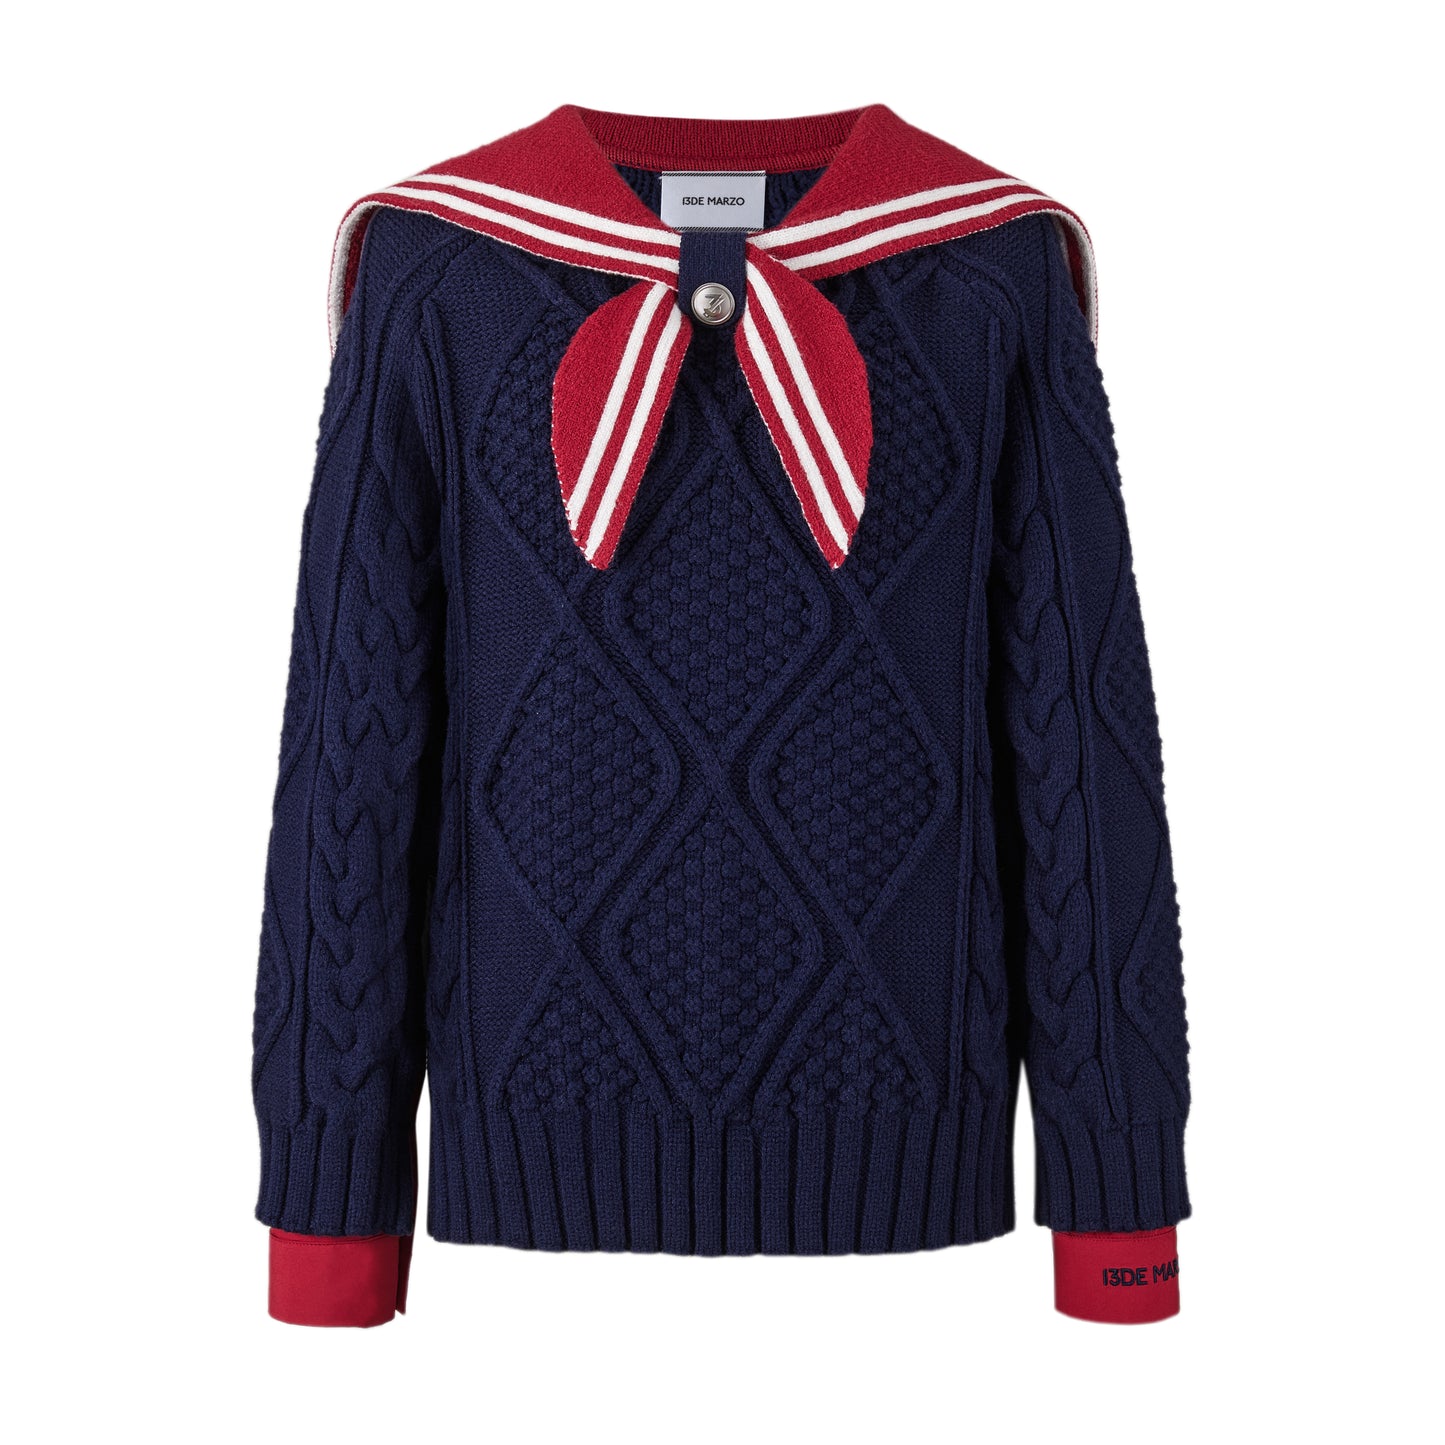 13DE MARZO Sailor Collar Sweater